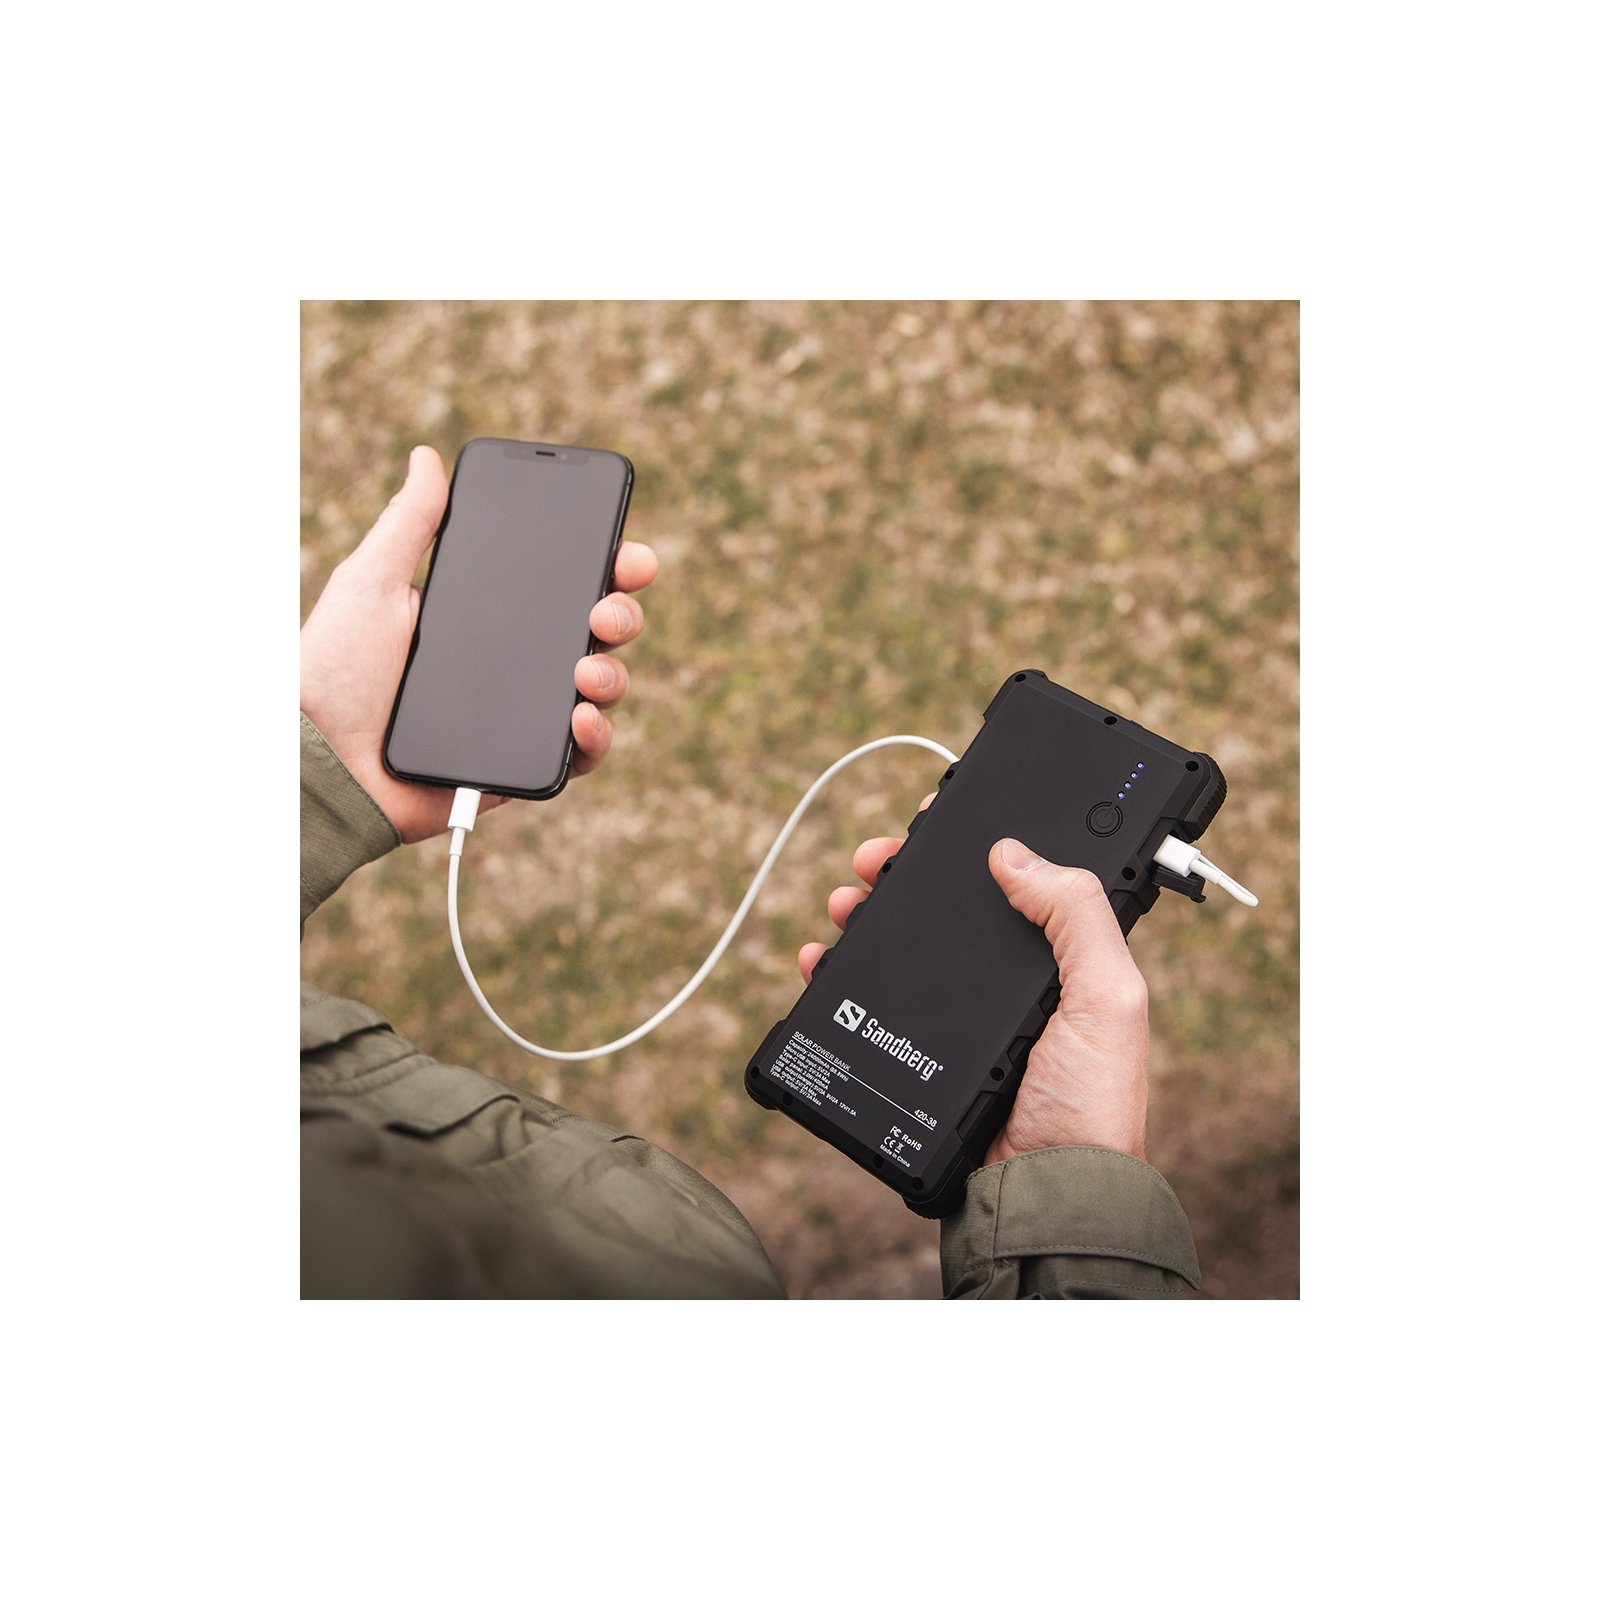 Батарея универсальная Sandberg 24000mAh, Outdoor, Solar panel:2W/400mA, flashlight, QC/3.0, USB-C, USB-A (420-38) изображение 3